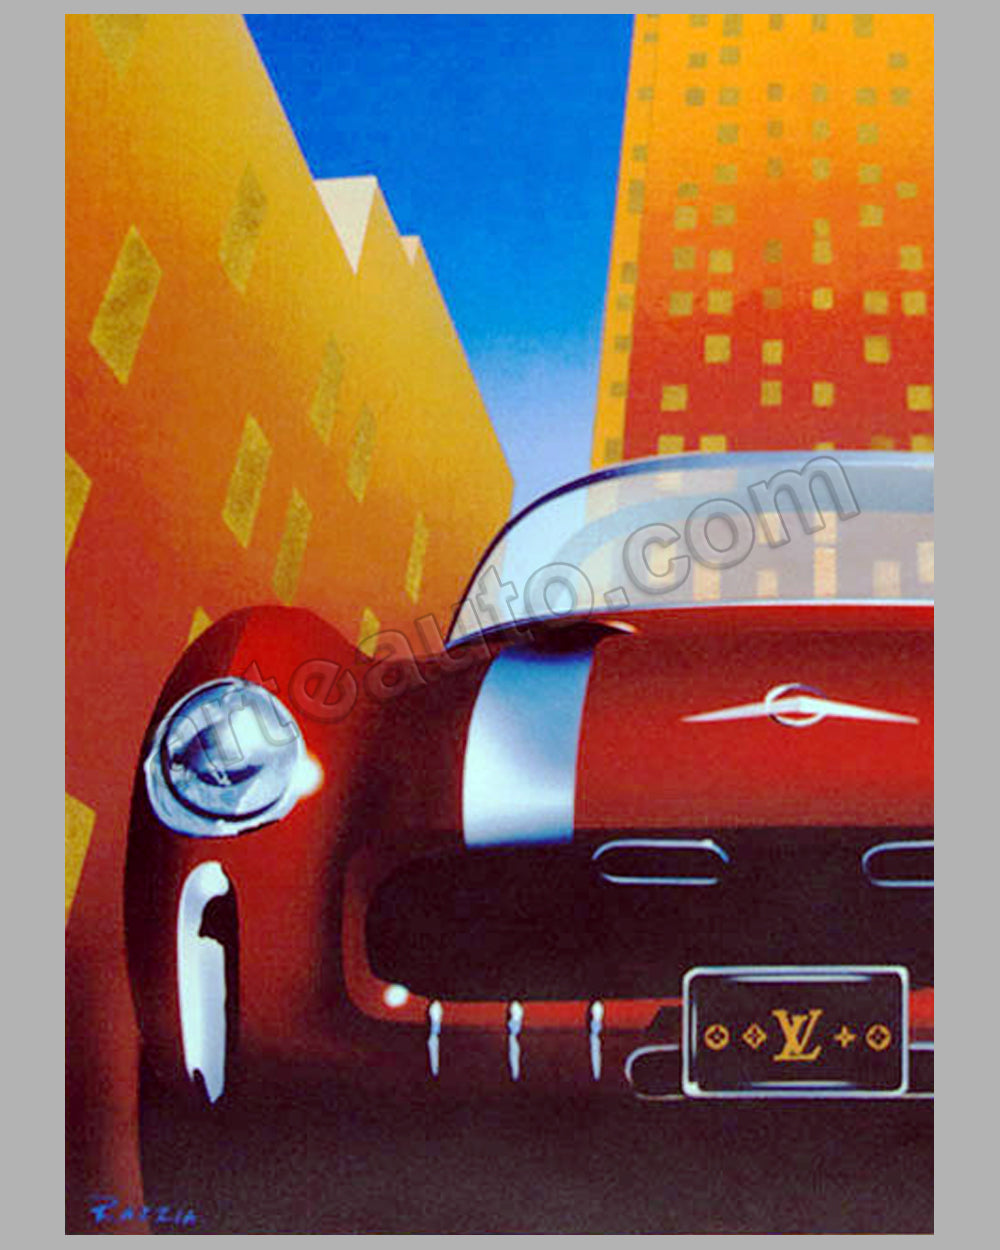 Louis Vuitton Acts 2004-2005-2006 large poster by Razzia - l'art et  l'automobile